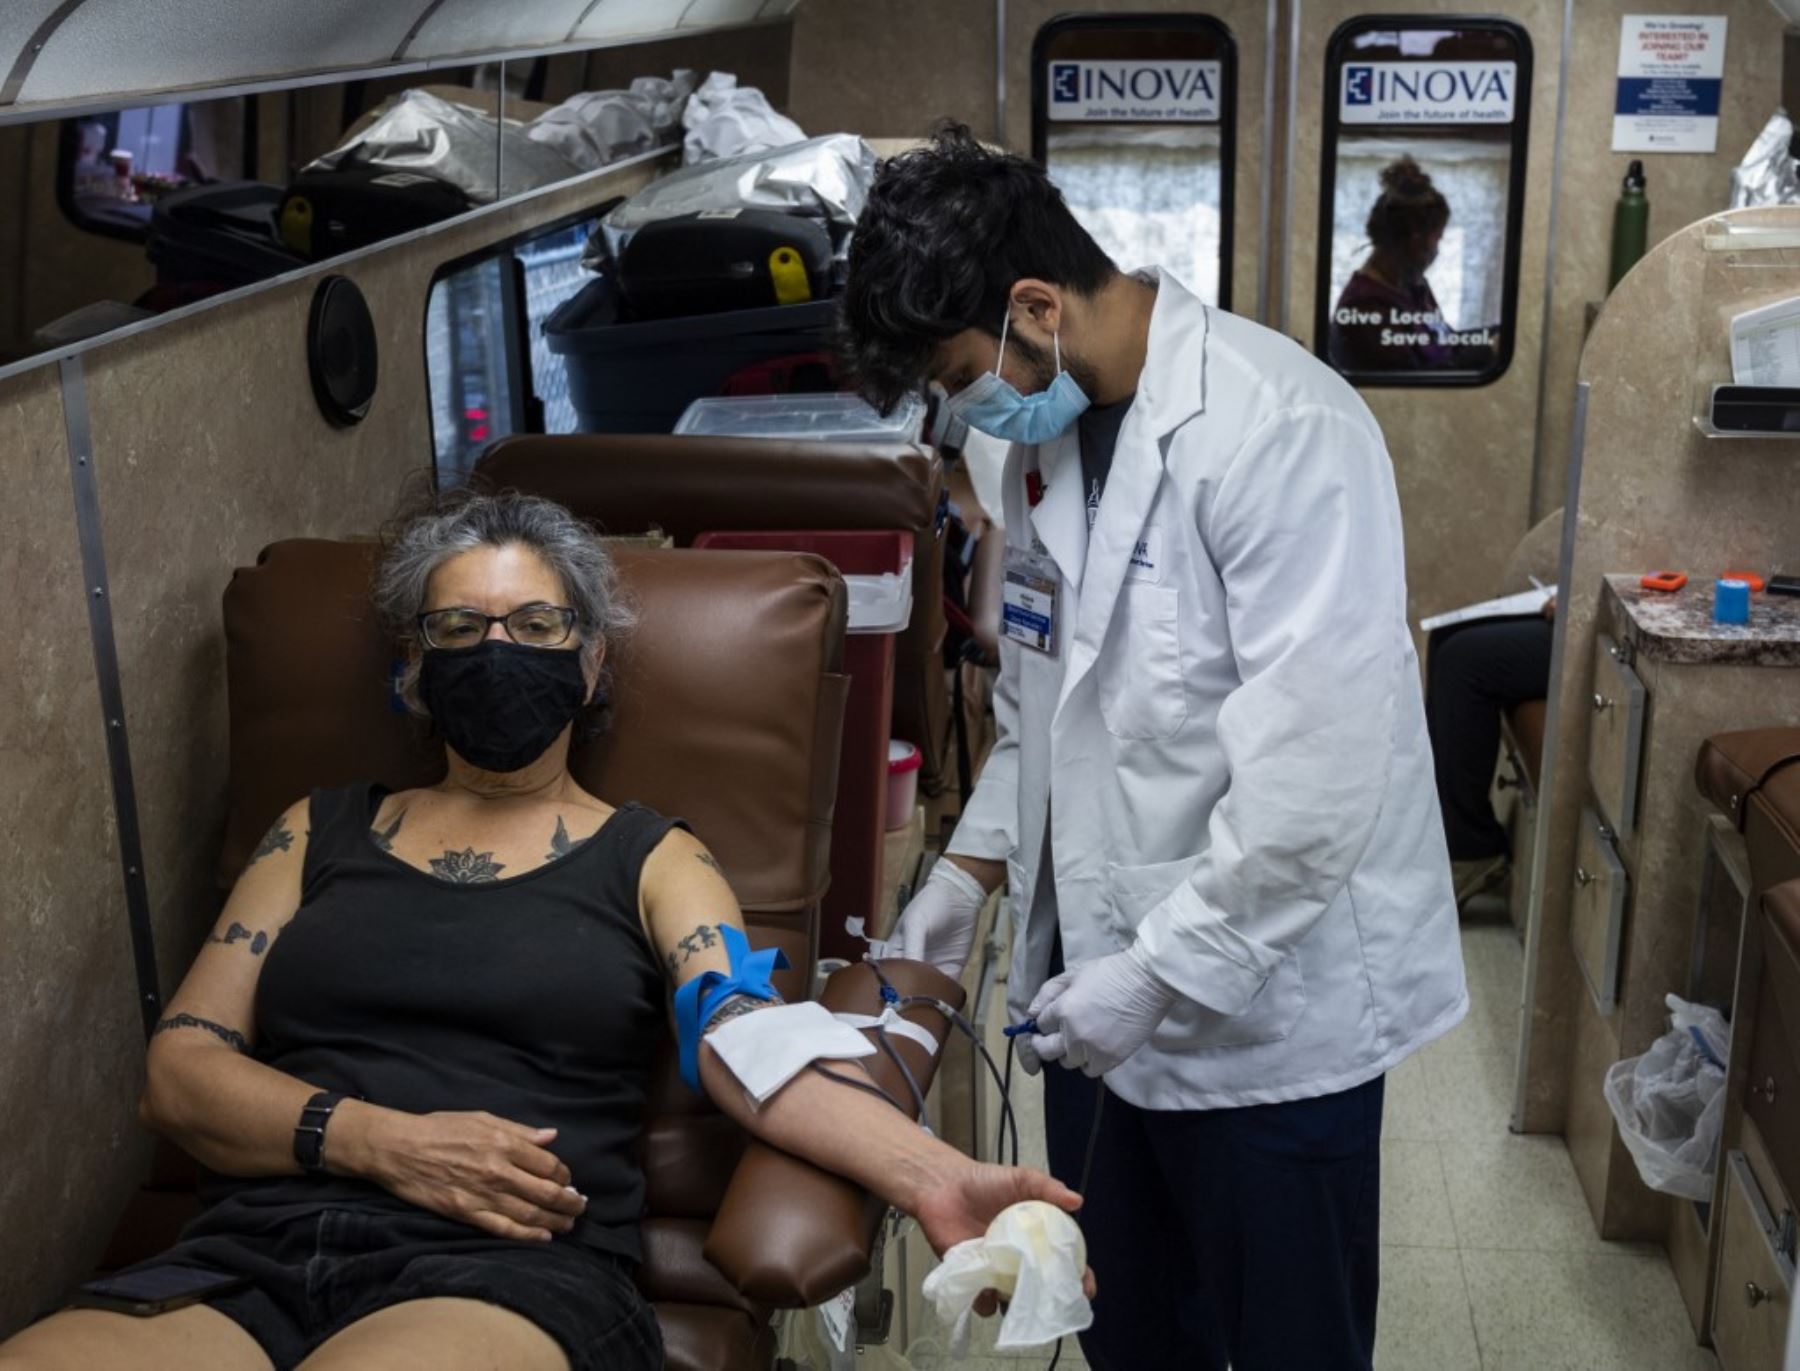 Una mujer dona sangre en un hospital de INOVA en el centro comunitario de Edlavitch judíos en Washington. Foto: AFP